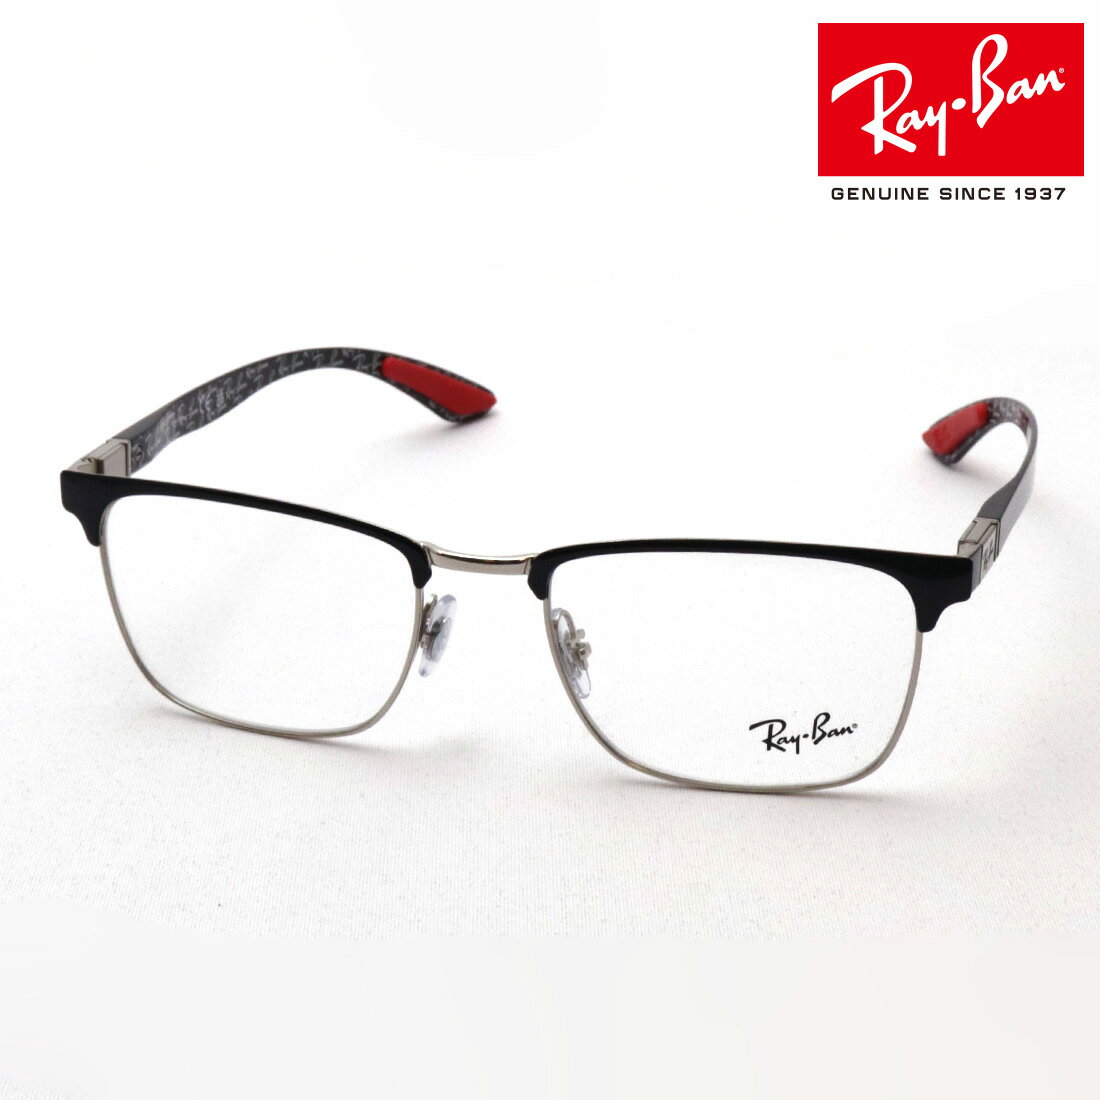 レイバン メガネ メンズ NewModel 正規レイバン日本最大級の品揃え レイバン メガネ フレーム Ray-Ban RXRX8421 2861 伊達メガネ 度付き ブルーライト カット 眼鏡 RayBan ブロー ブラック系 シルバー系